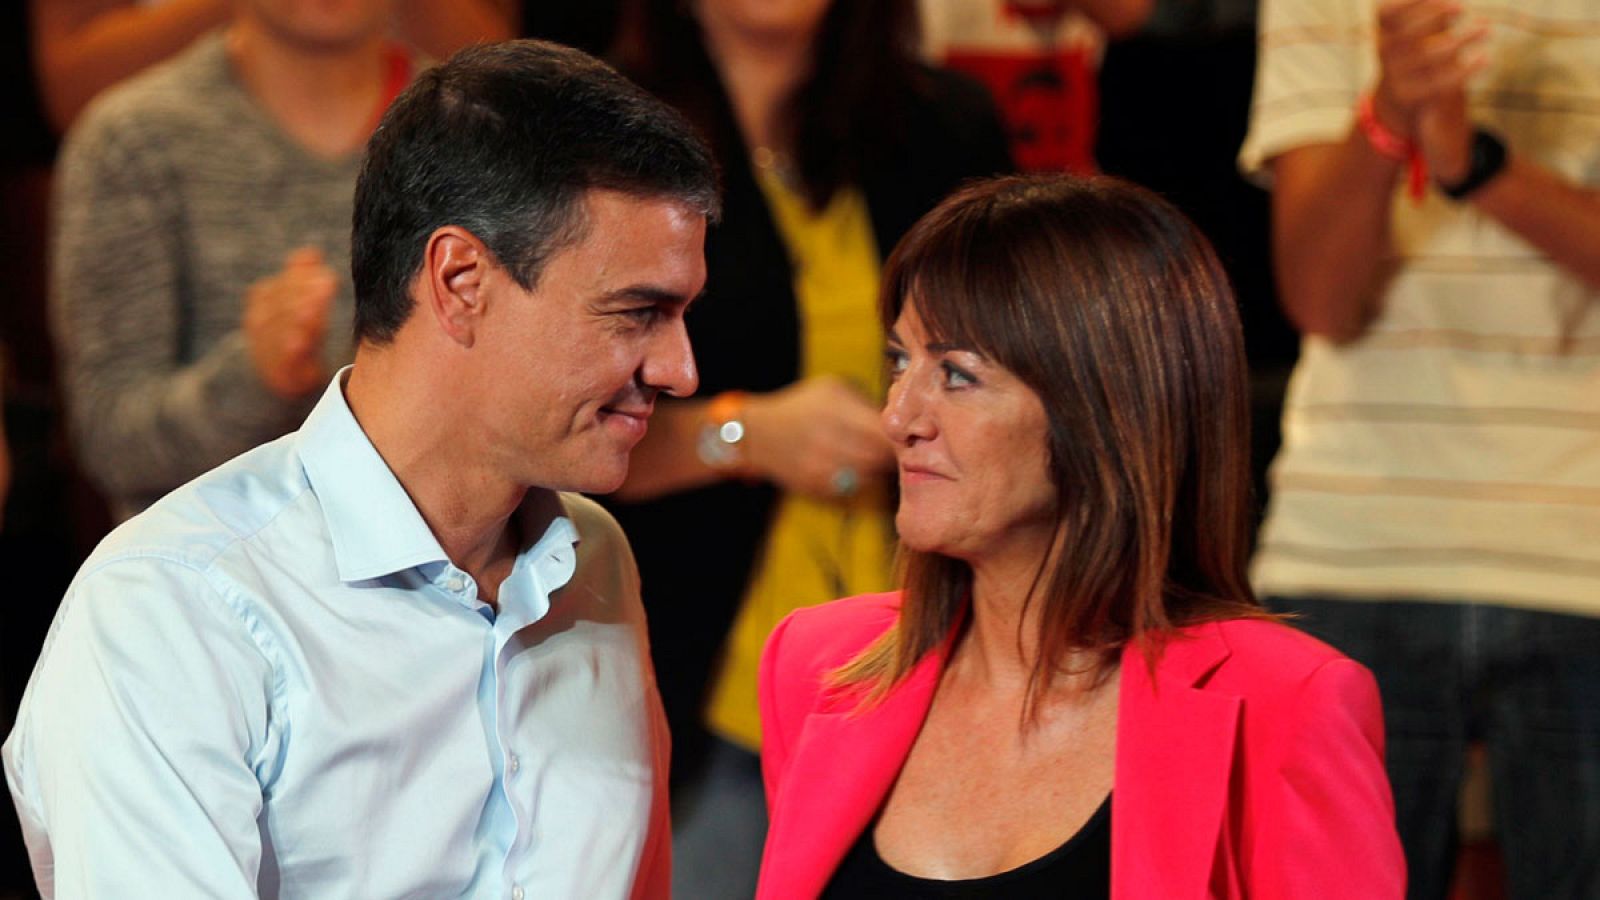 Elecciones generales: Rivera dice que Sánchez se equivoca al rechazar un pacto y este le responde: "El pánico hace milagros" - RTVE.es